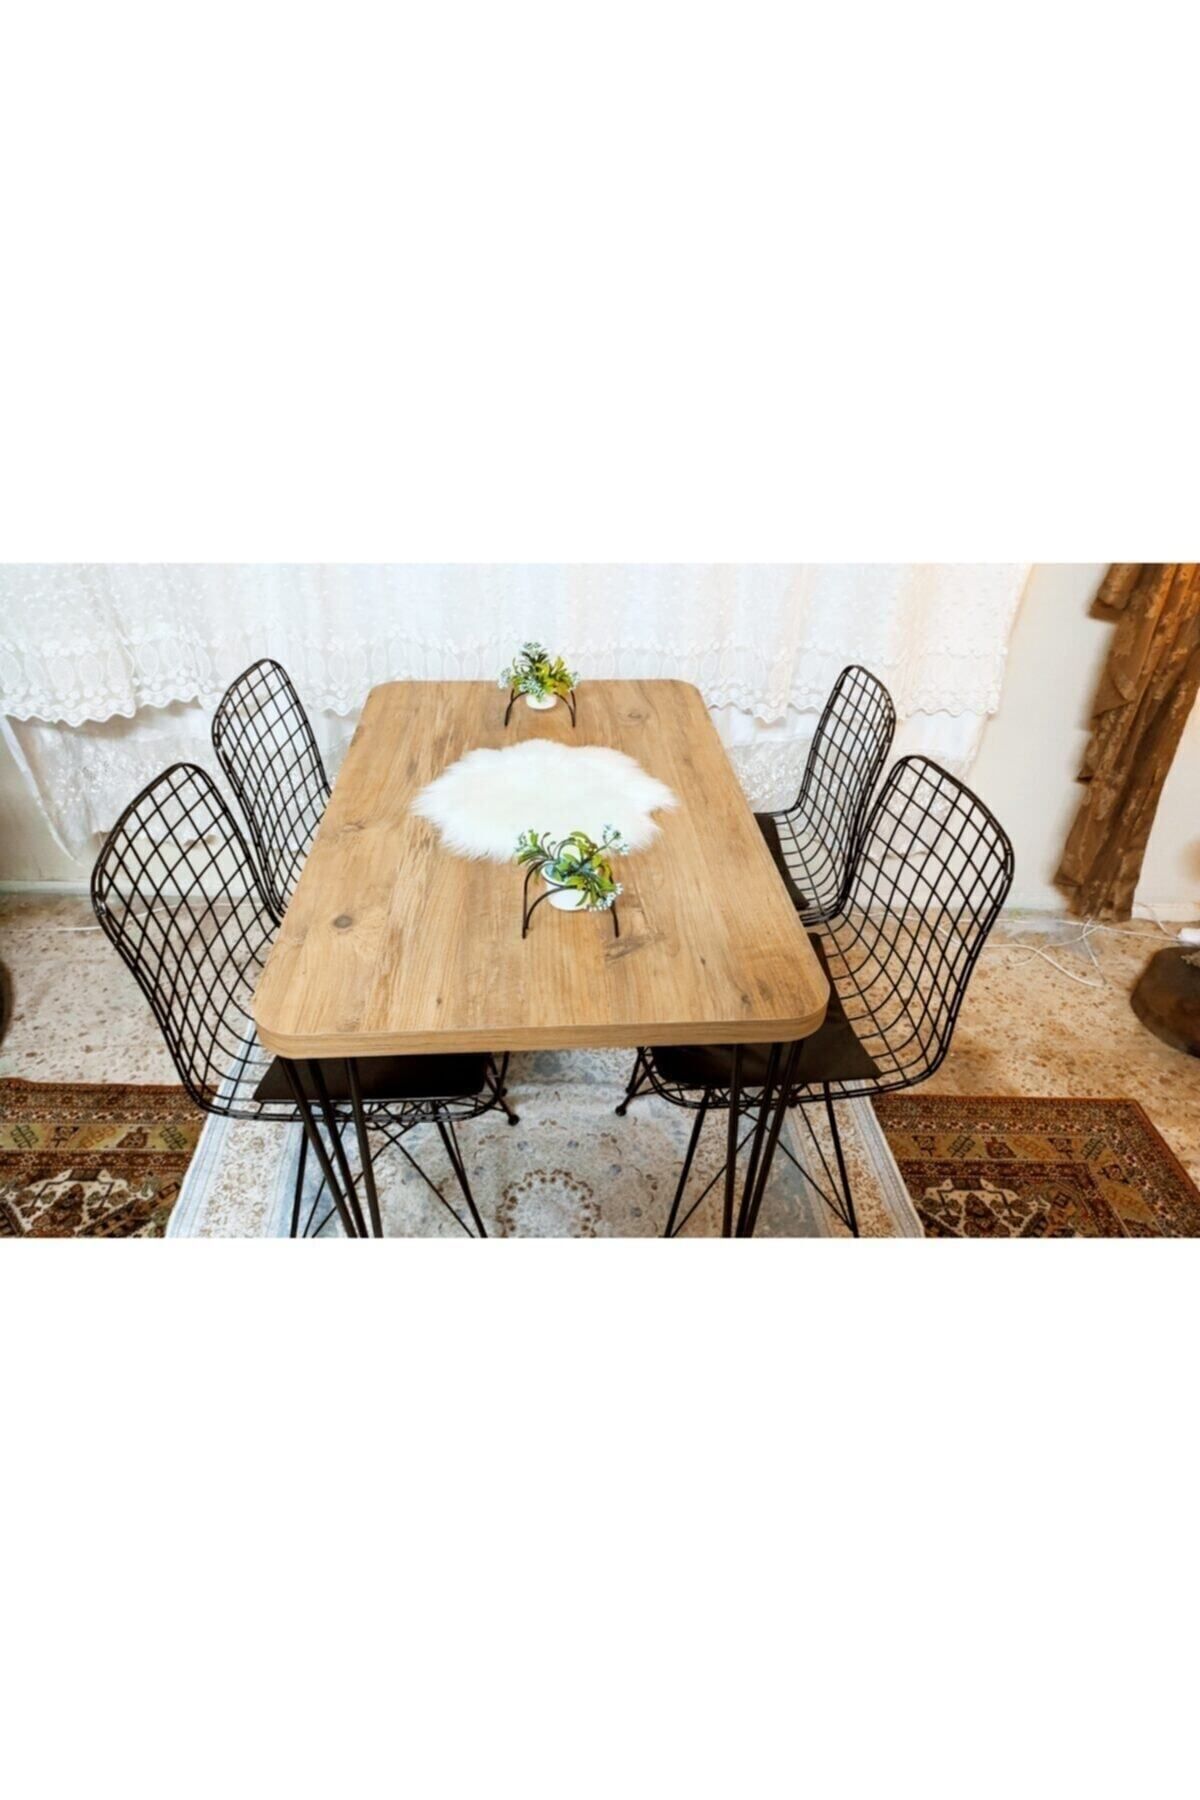 YusGos Byk Mobilya Mutfak Yemek Masa Takımı Mermer Desencafe Masası 4 Adet Tel Sandalye 1 Adet Masa